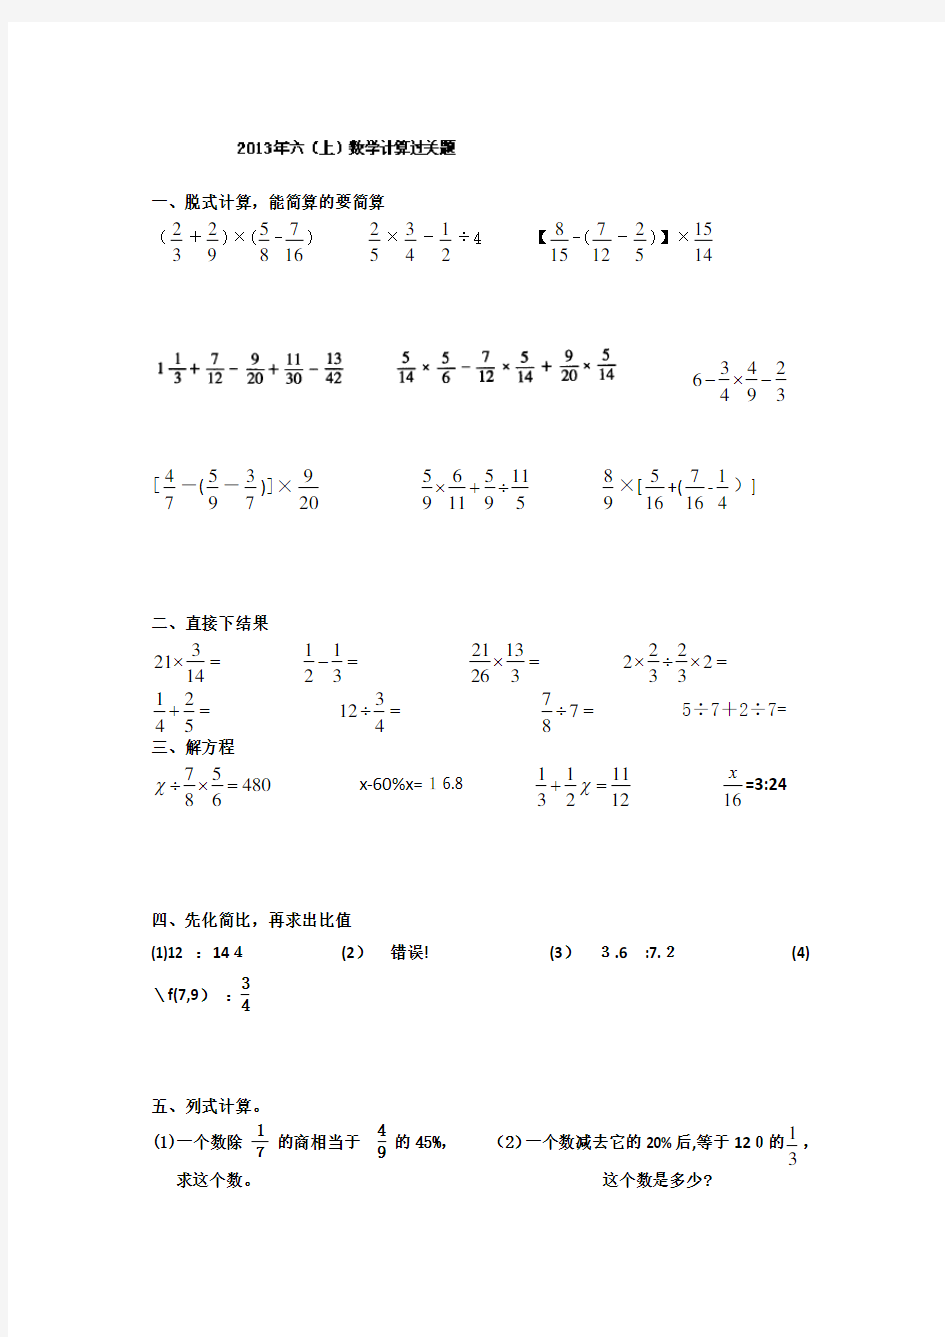 六年级上数学试题-组卷练习-12-13内蒙古(无标准答案)【小学学科网】